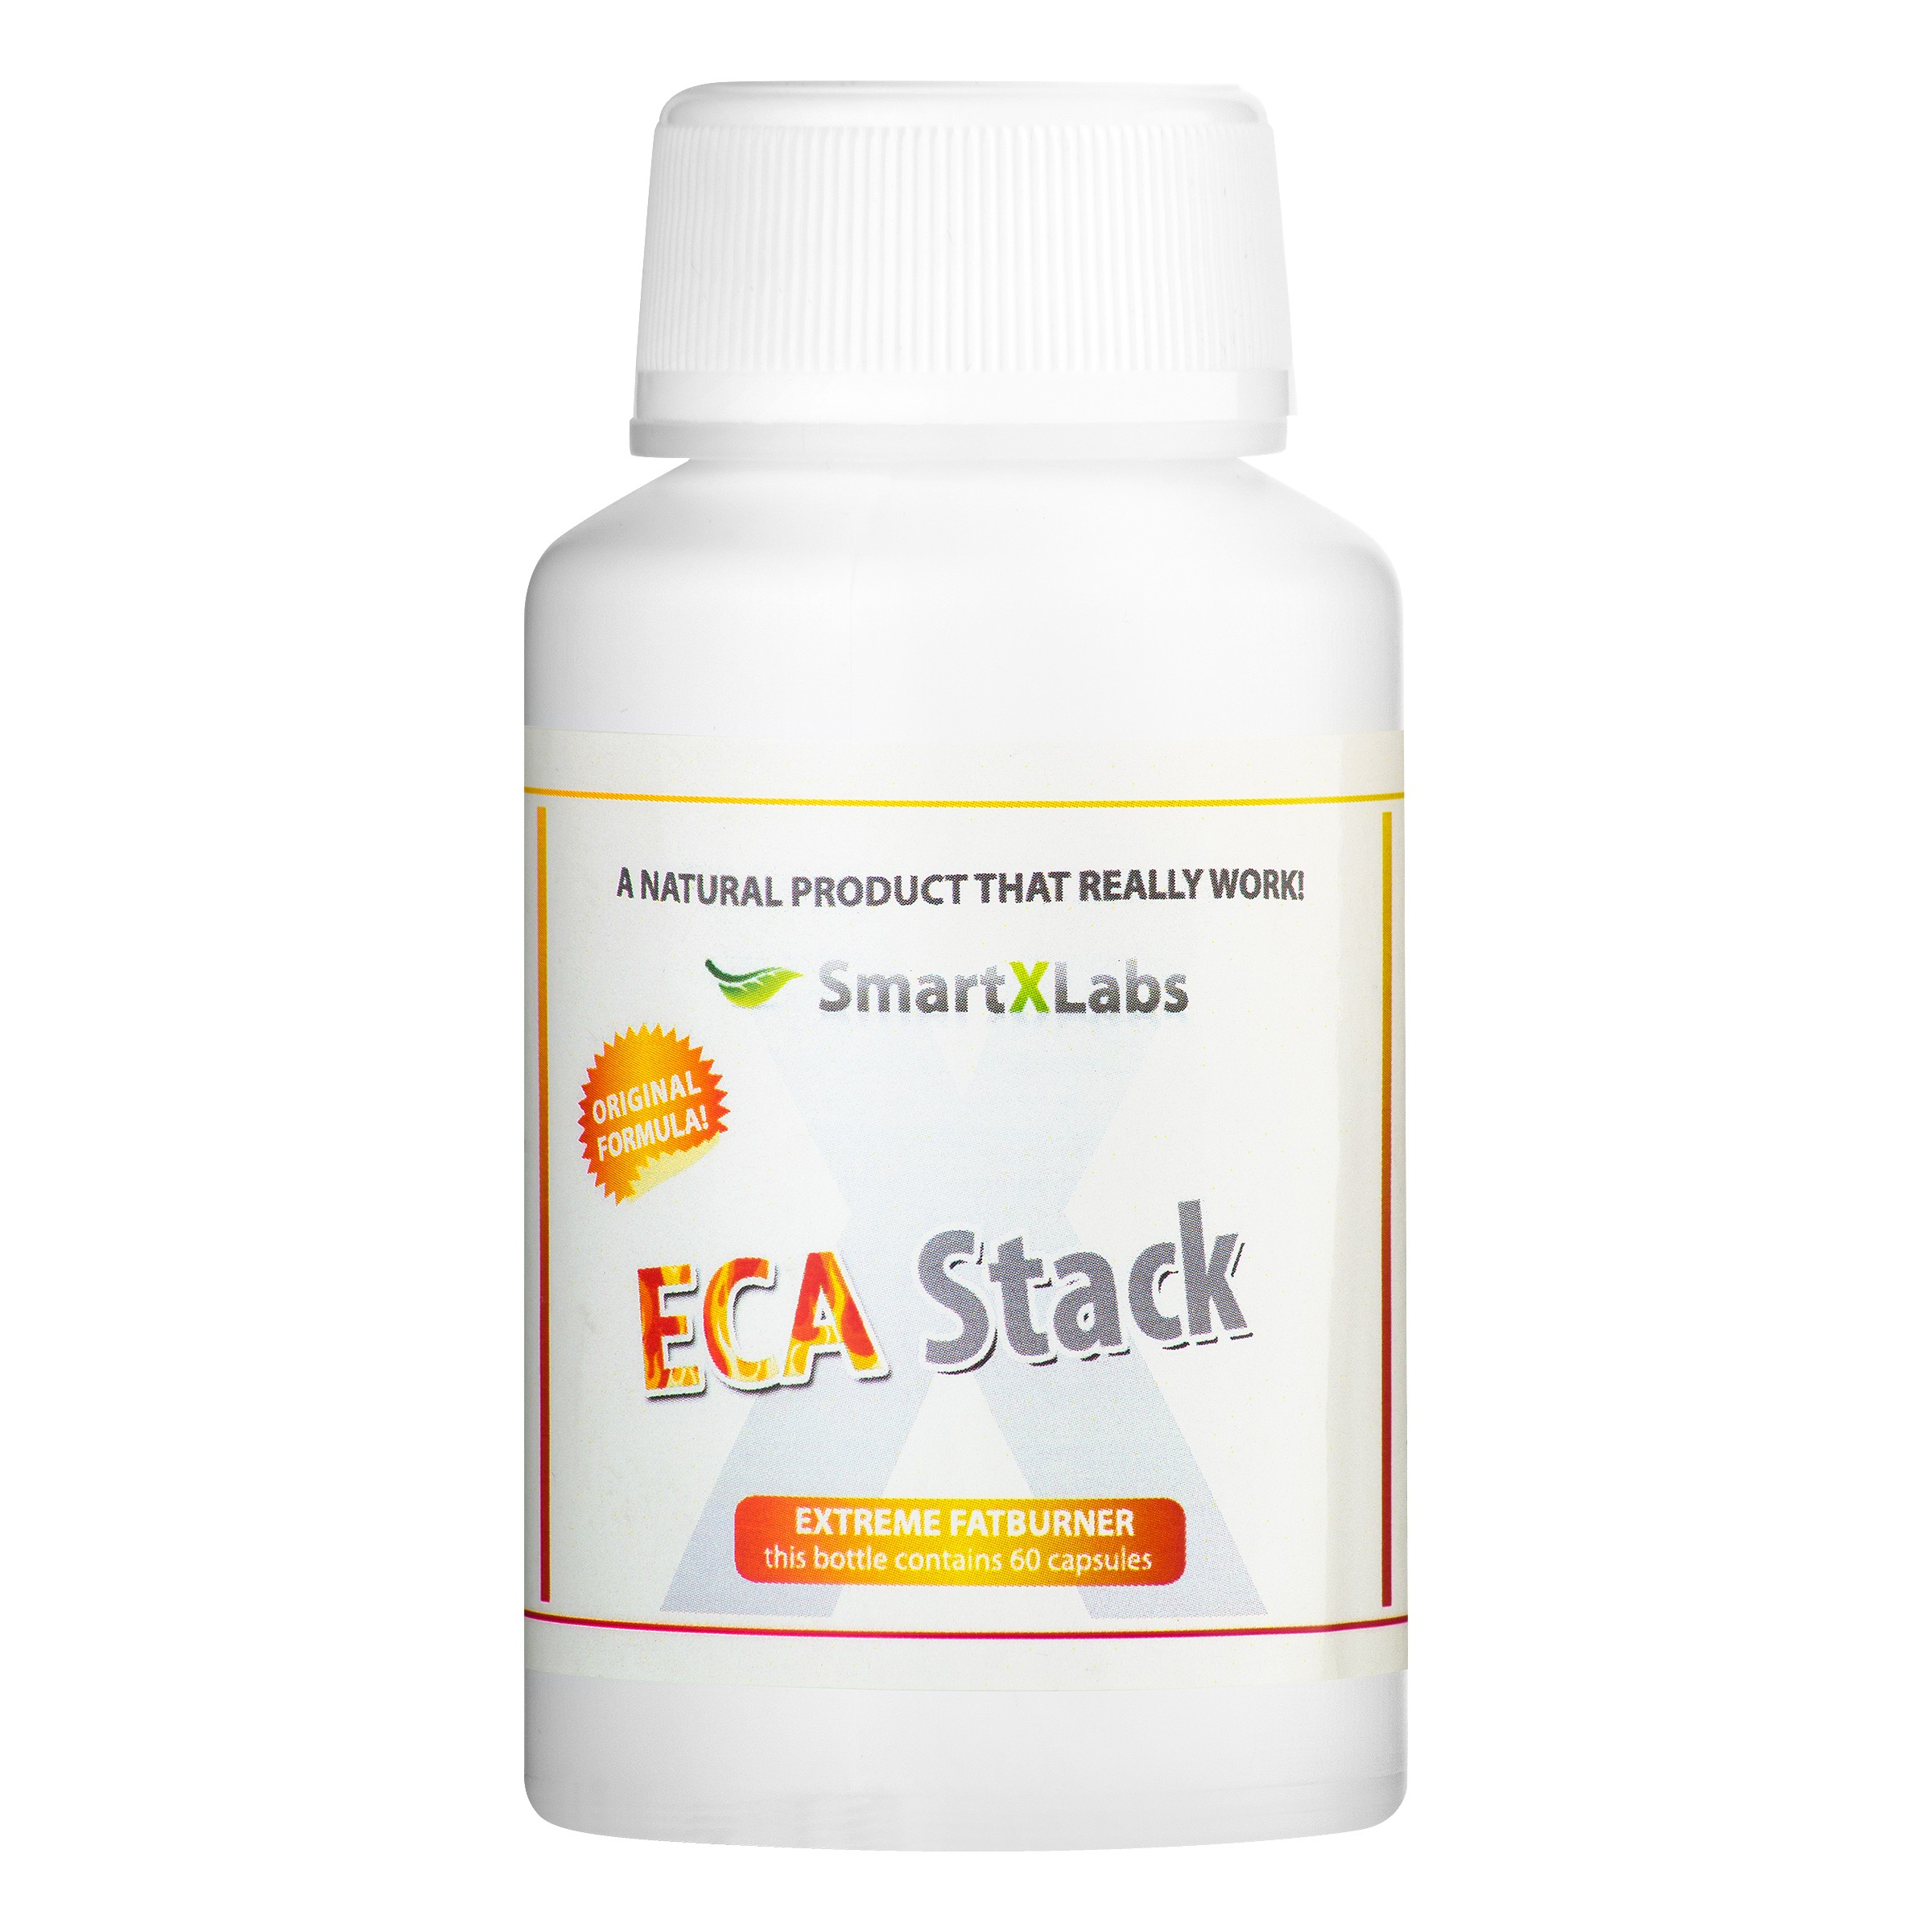 Eca stack legjobb zsírégető, Eca 30 zsírégetők mellékhatásai